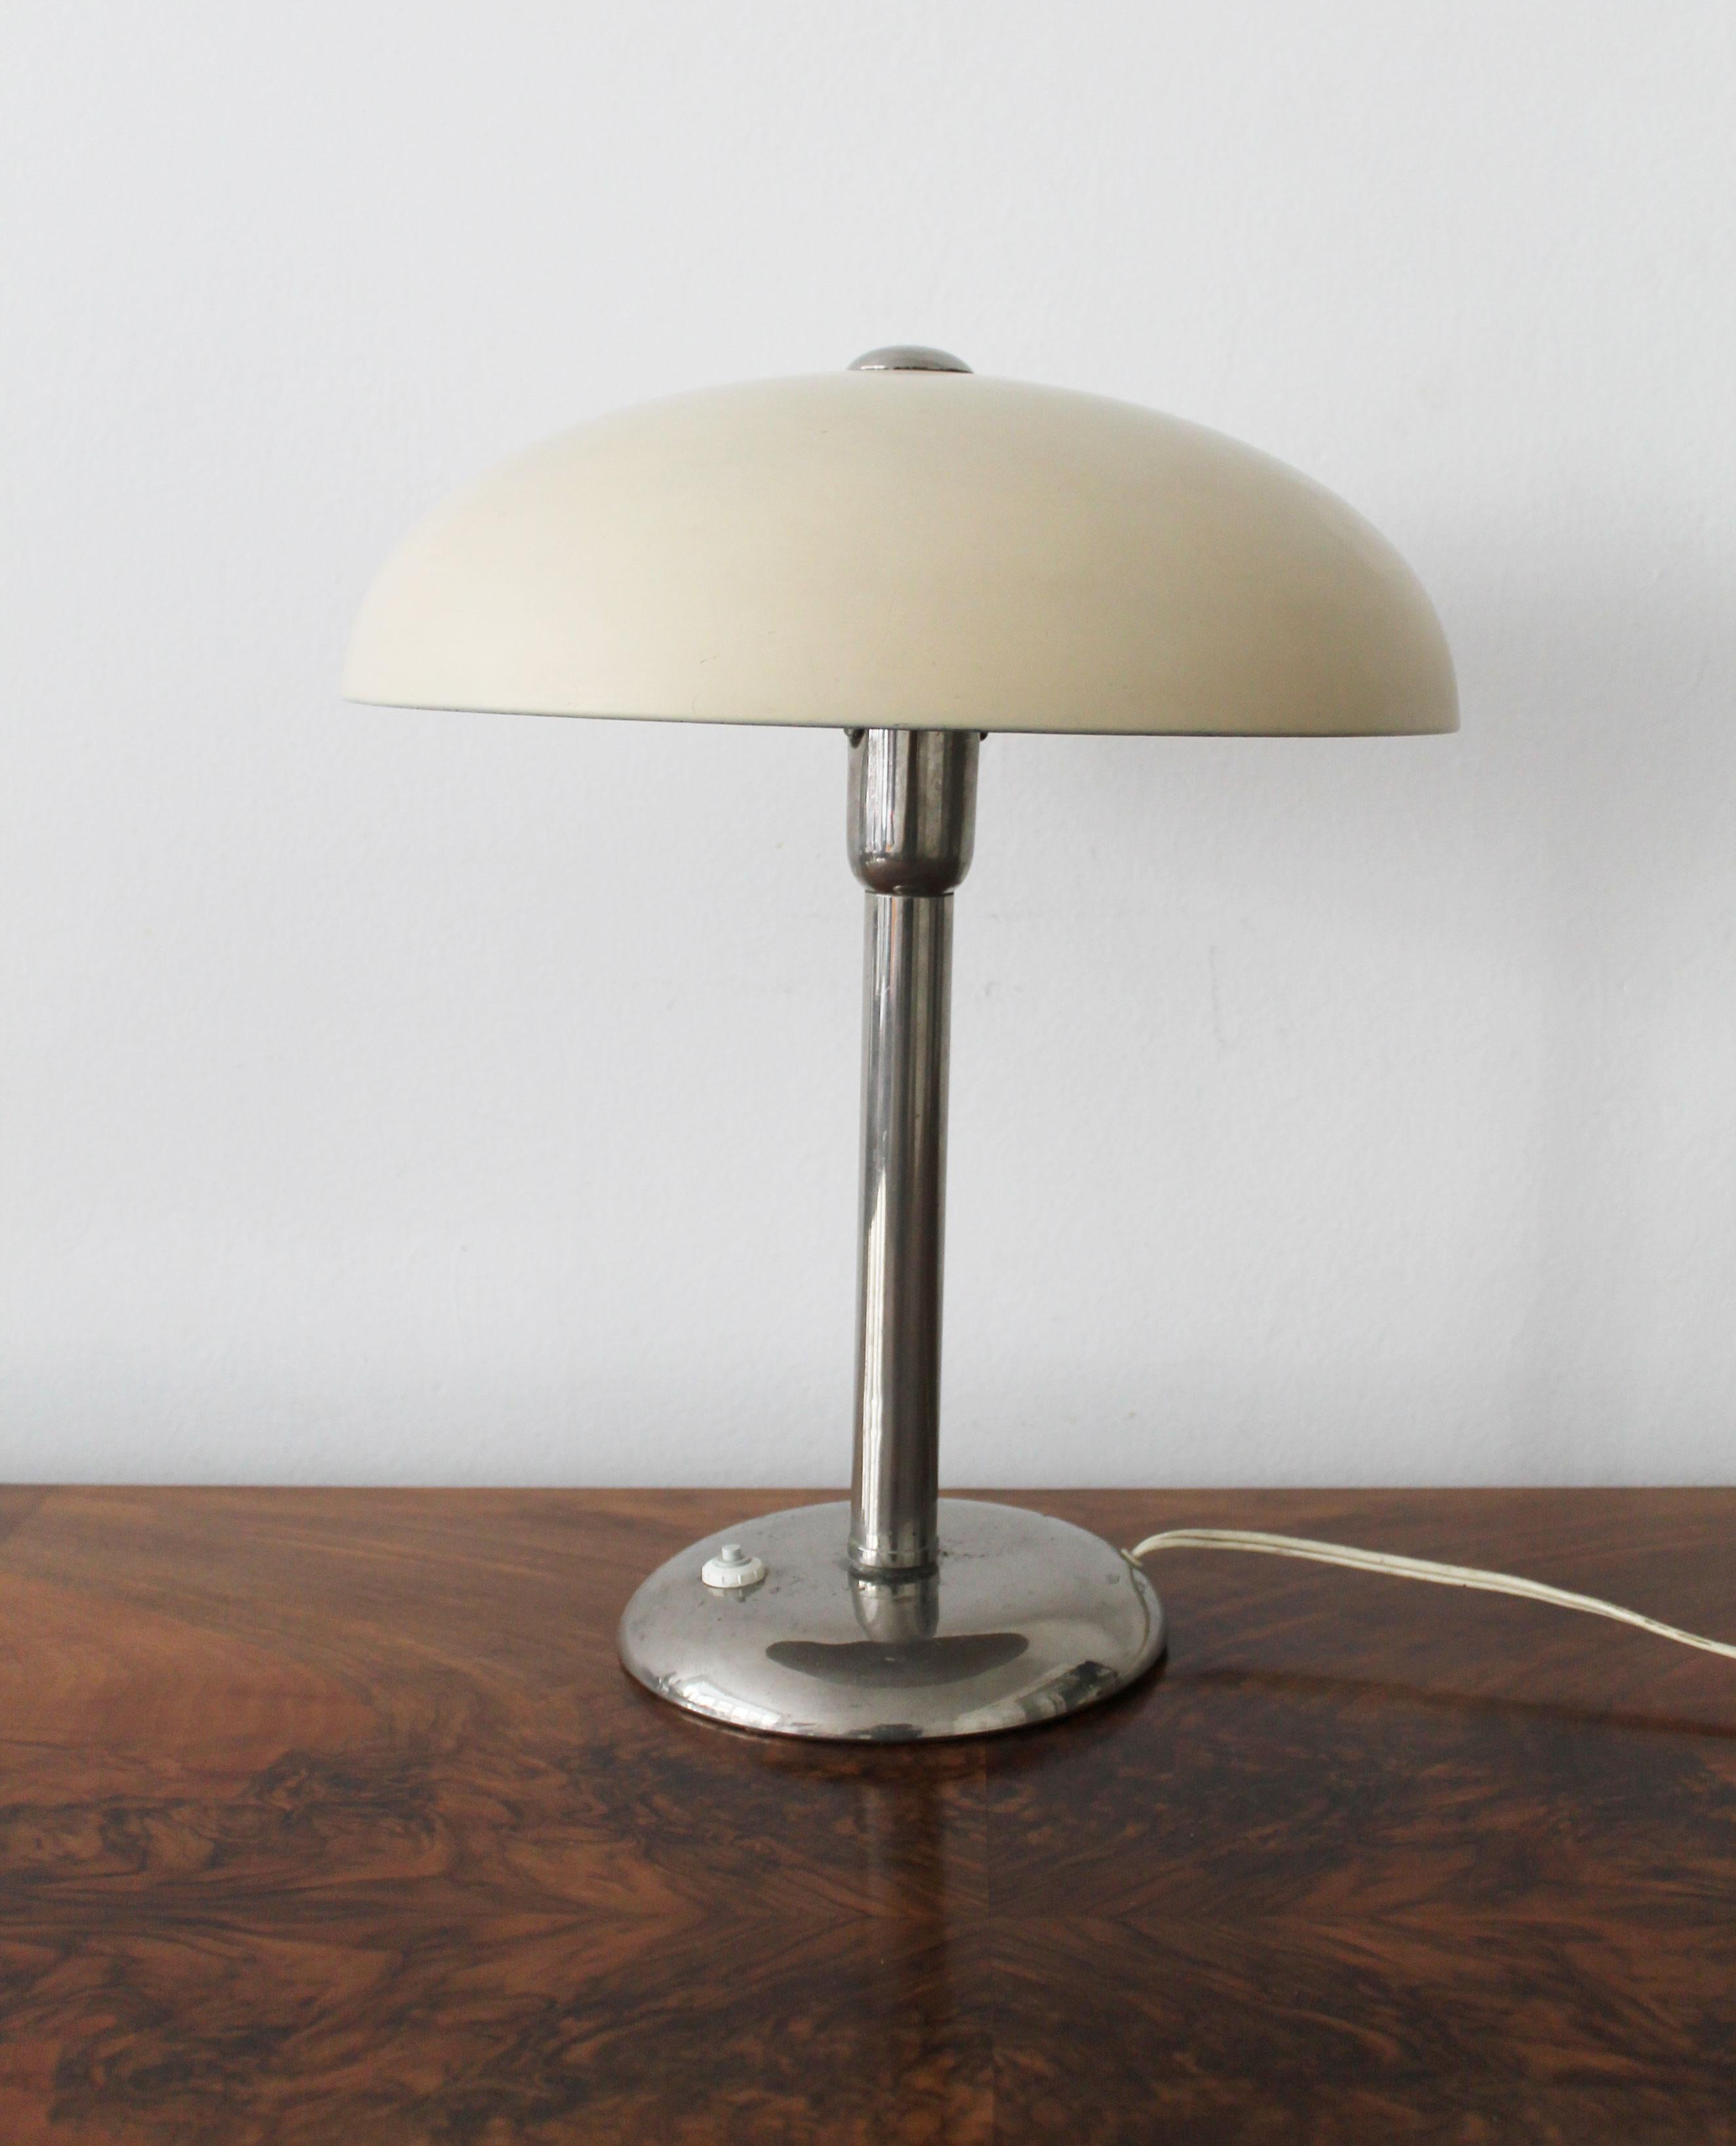 Cette lampe de table moderniste des années 1930 est fabriquée en acier chromé avec un abat-jour peint dans une couleur crème. L'ampoule est positionnée verticalement, juste sous le grand abat-jour en forme de champignon qui est fixé à la base par